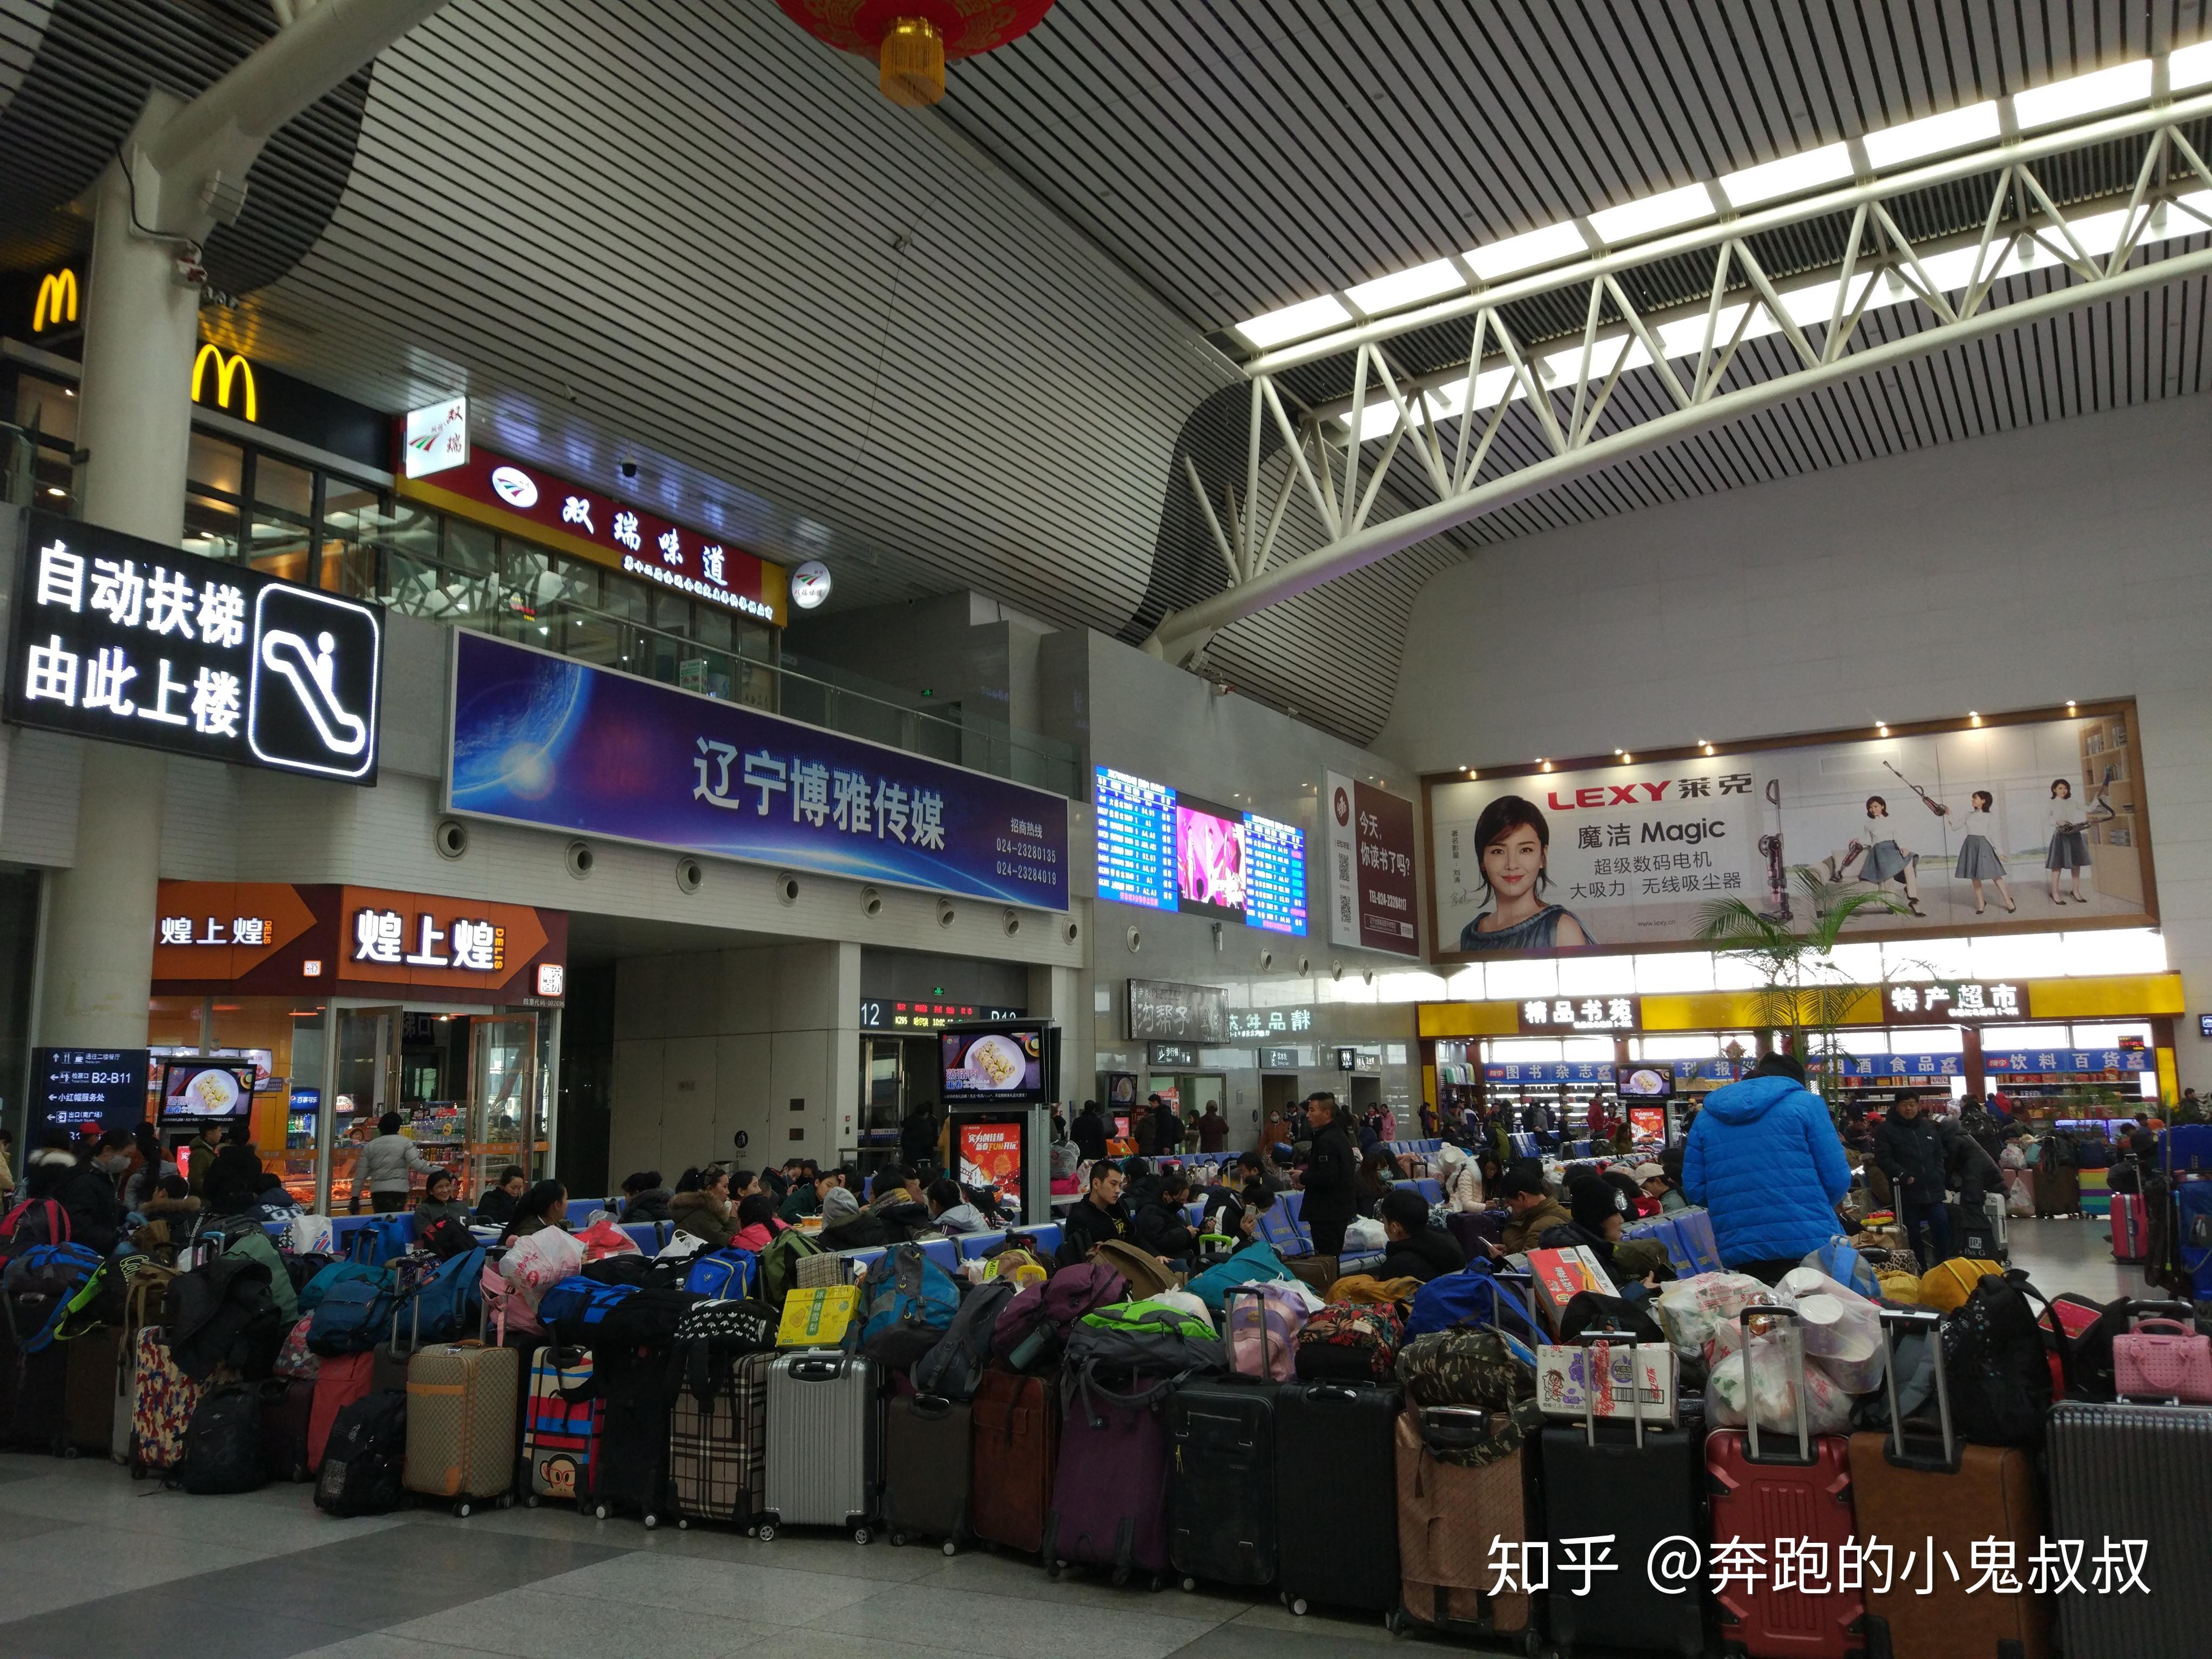 设计师带您走进亚洲最大铁路枢纽客站——北京丰台站_候车_旅客_换乘